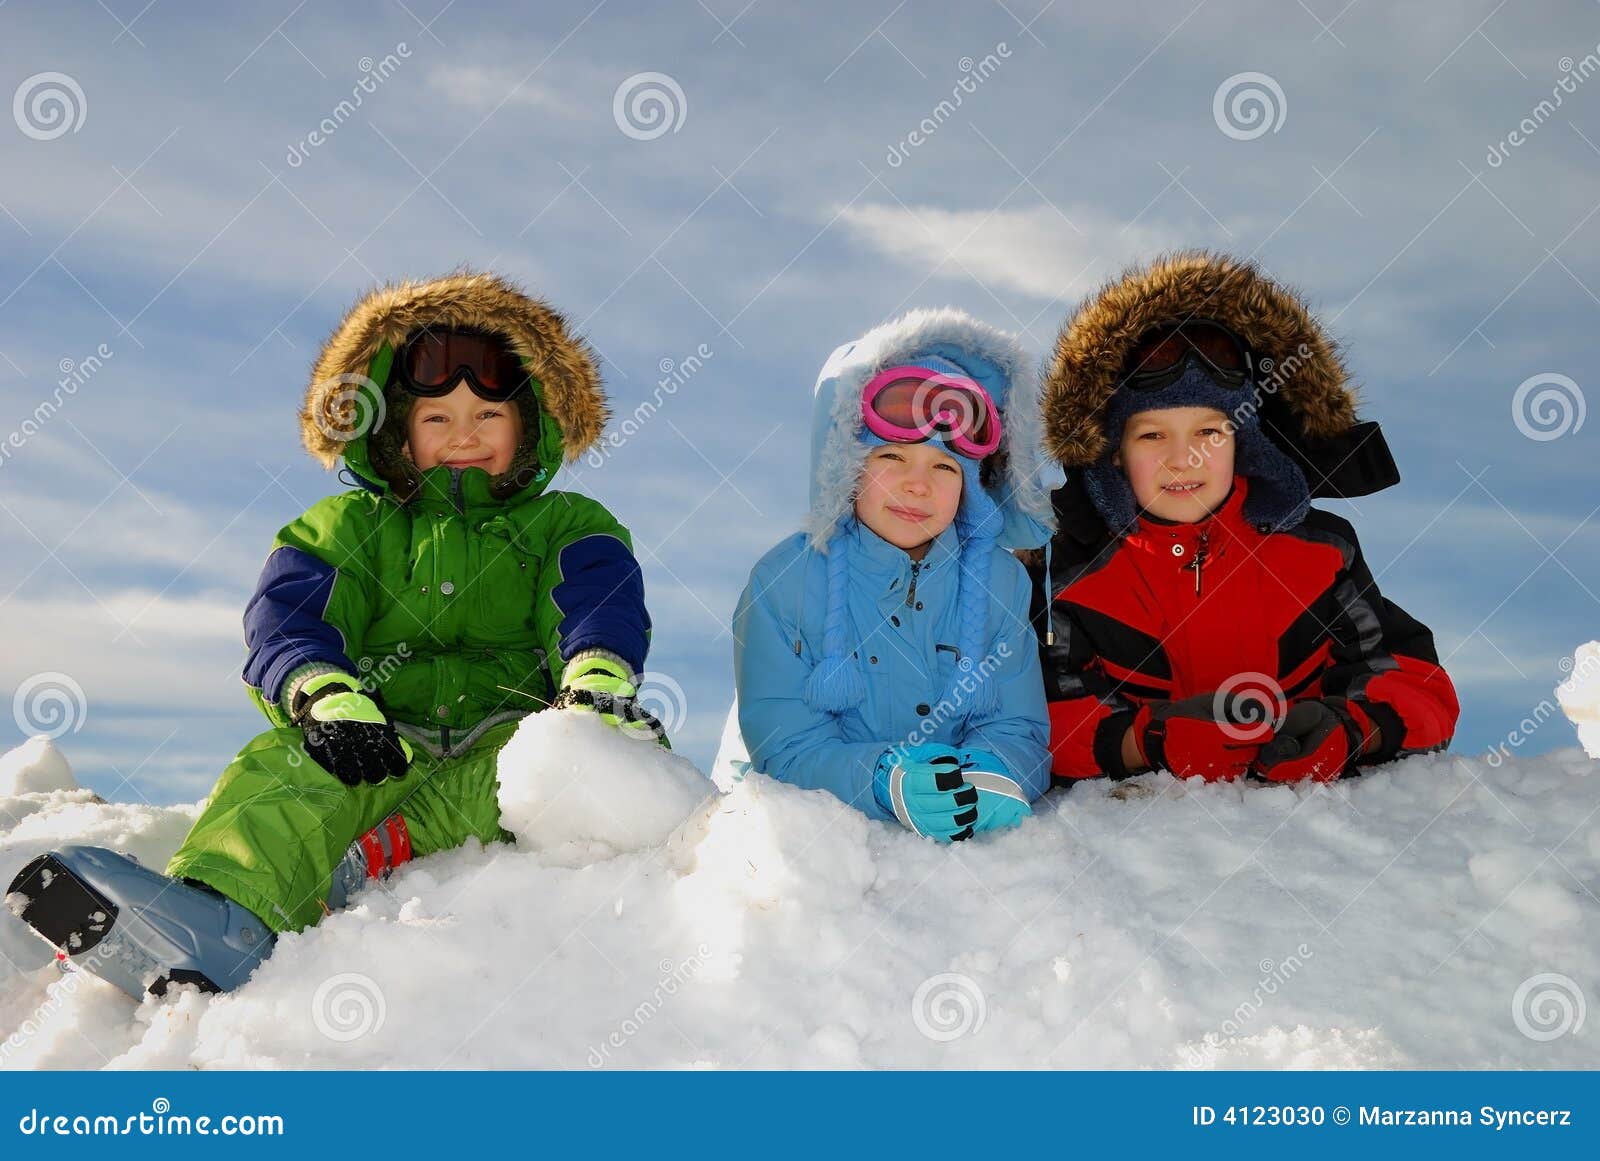 Niños felices con ropa de invierno en la nieve.